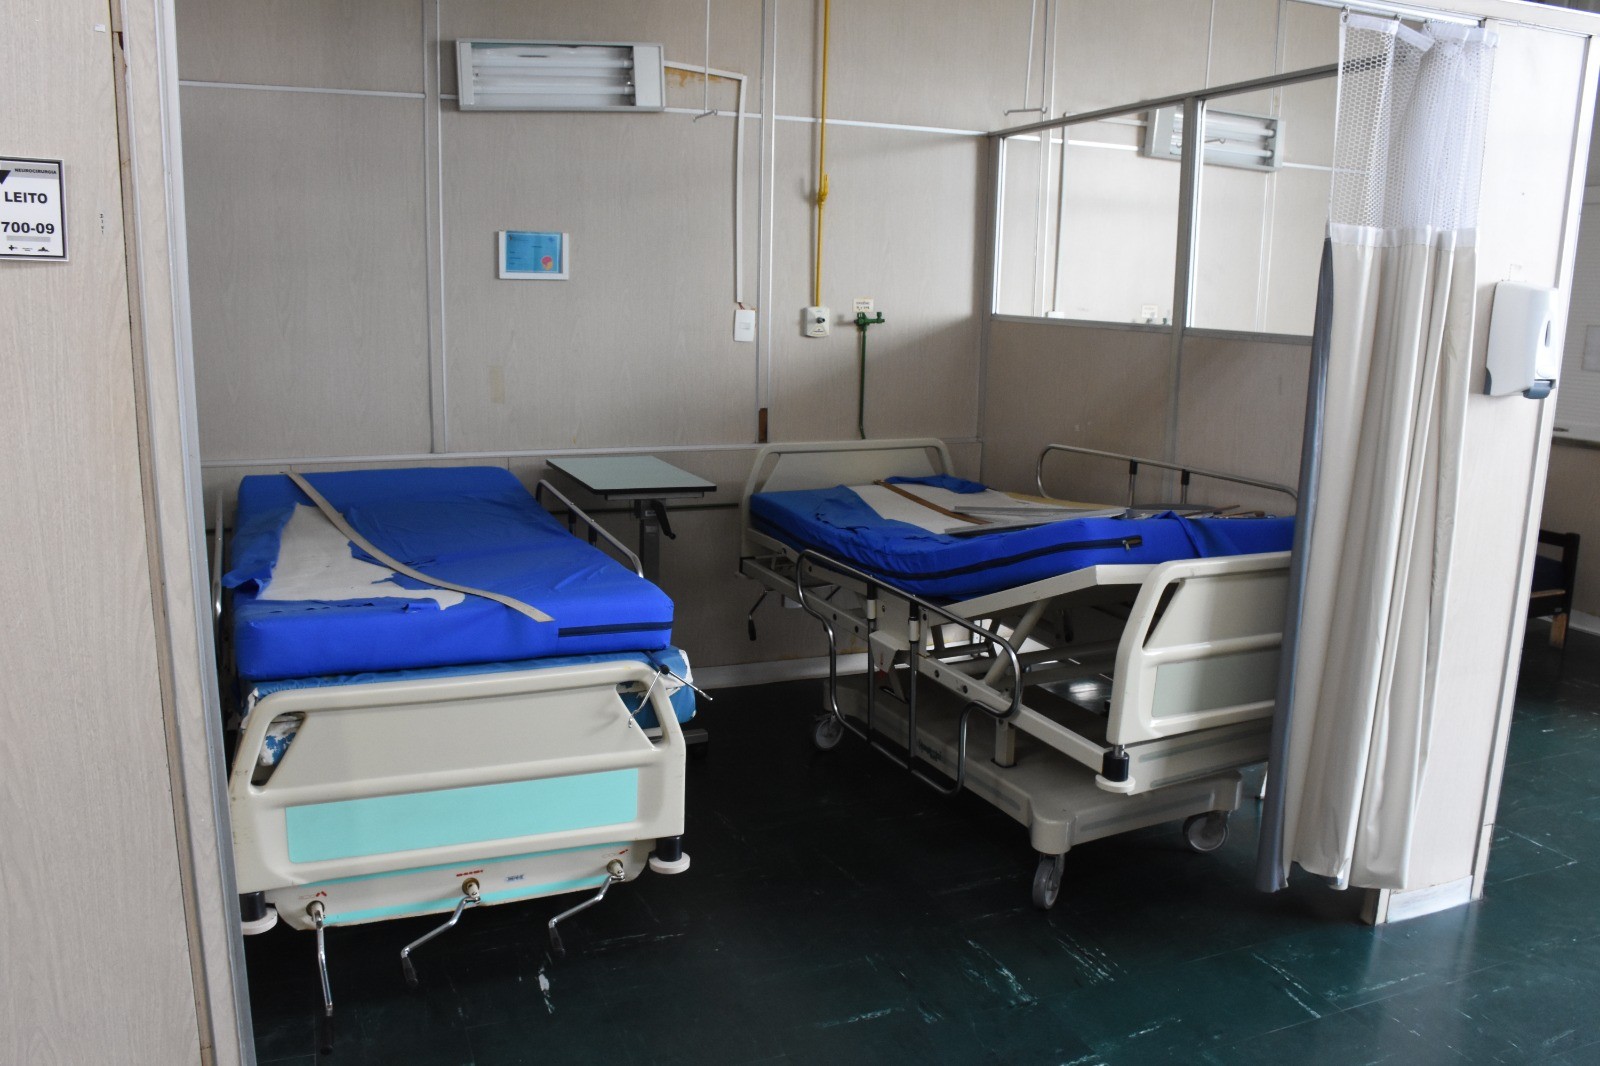 Leitos de enfermaria fechados por falta de equipamentos no Hospital Federal dos Servidores  — Foto: Reprodução relatório 